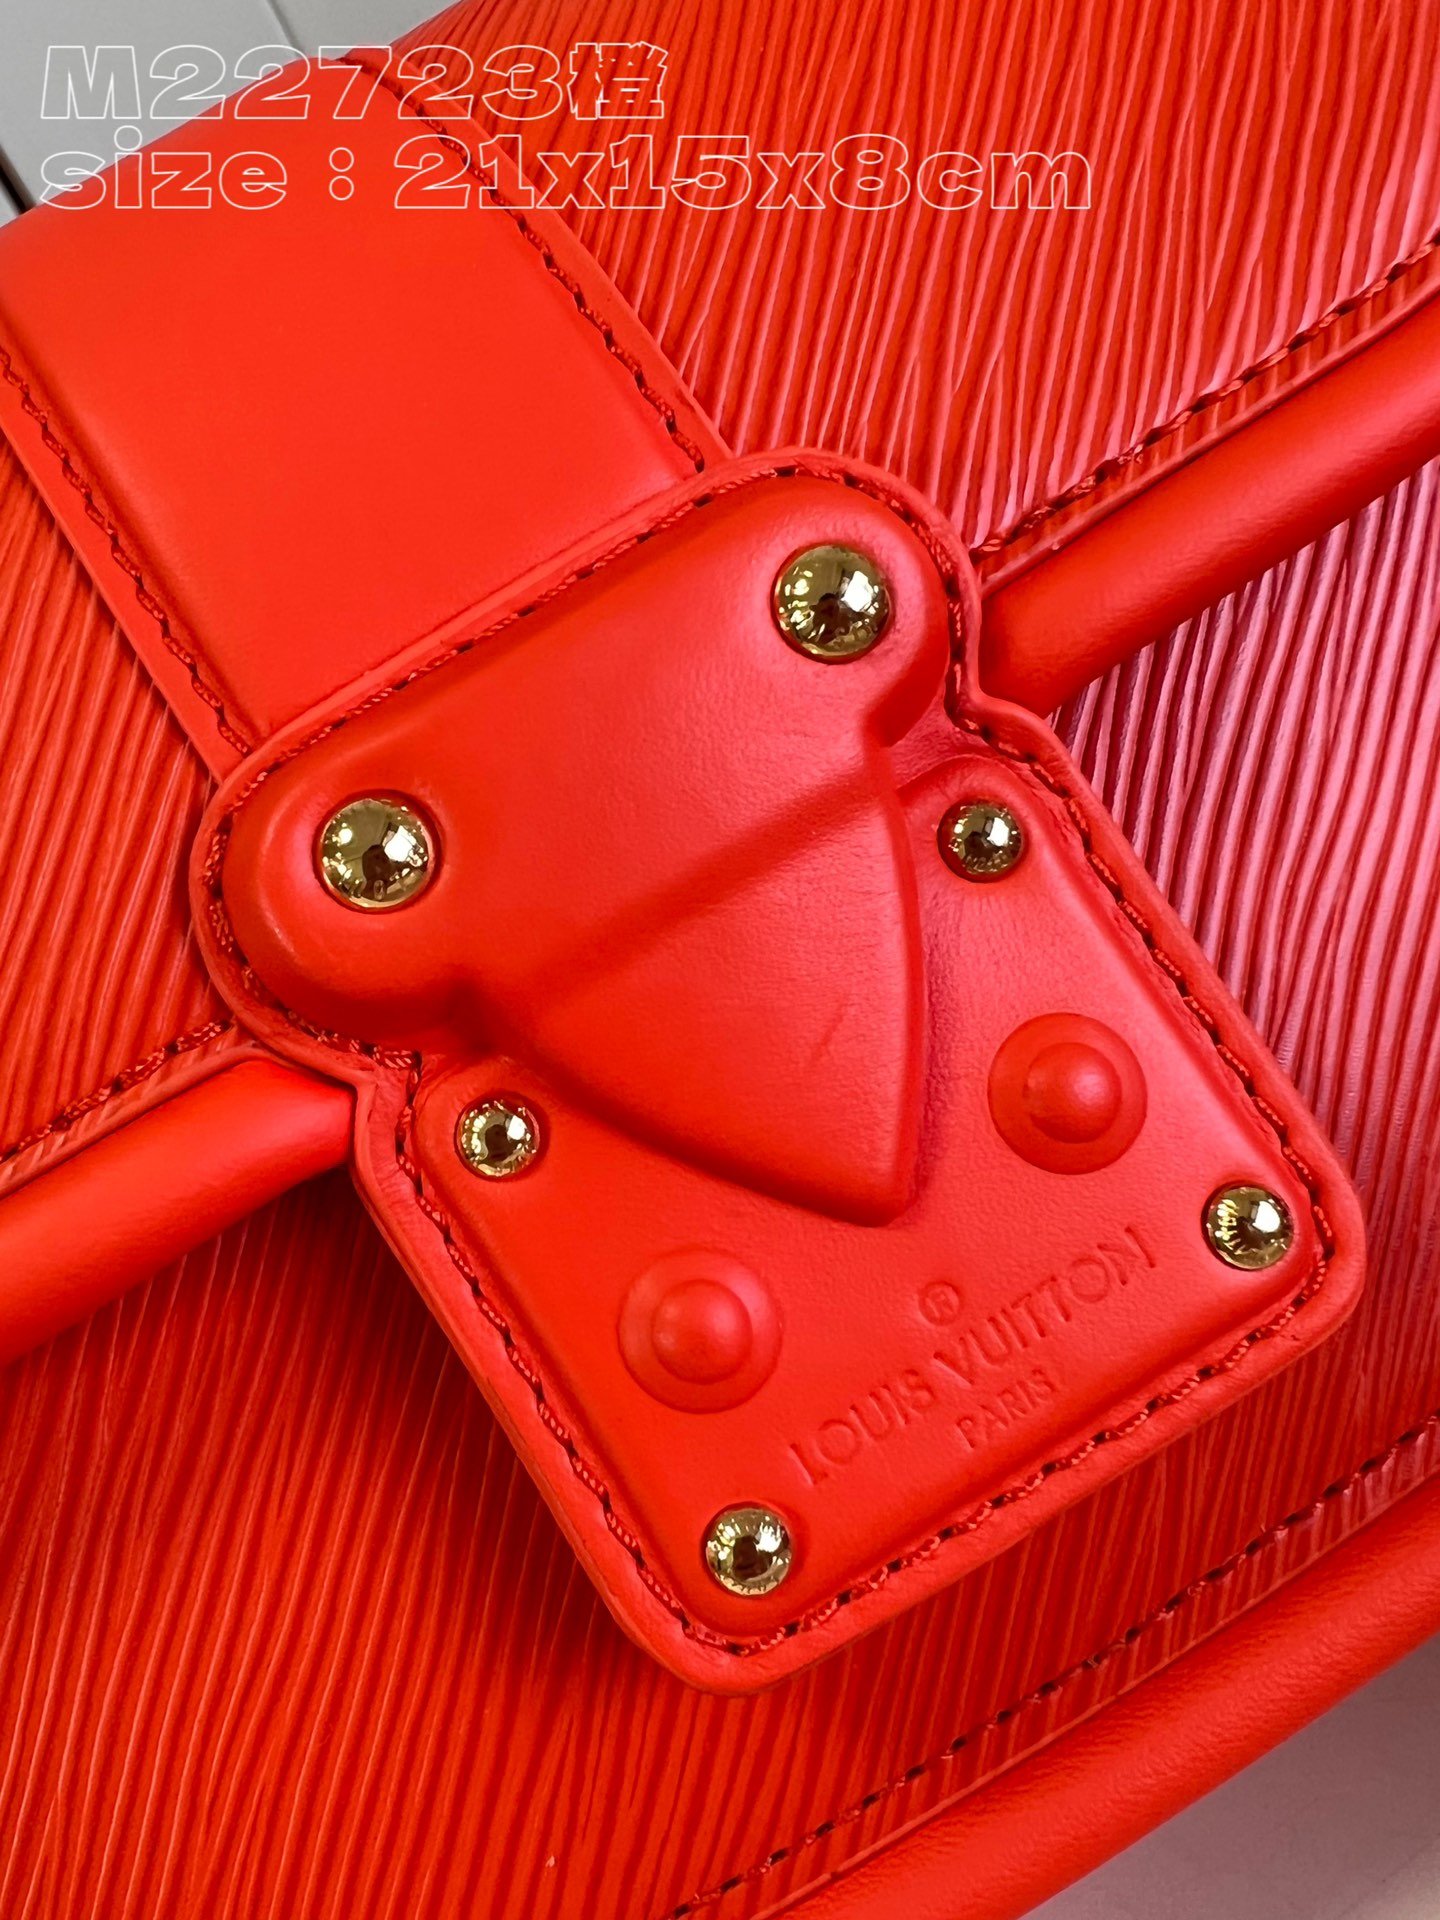 顶级原单M22723橙本款Hide&Seek手袋为Epi皮革渲染明媚色调以Toron辊压手柄和皮革包裹S